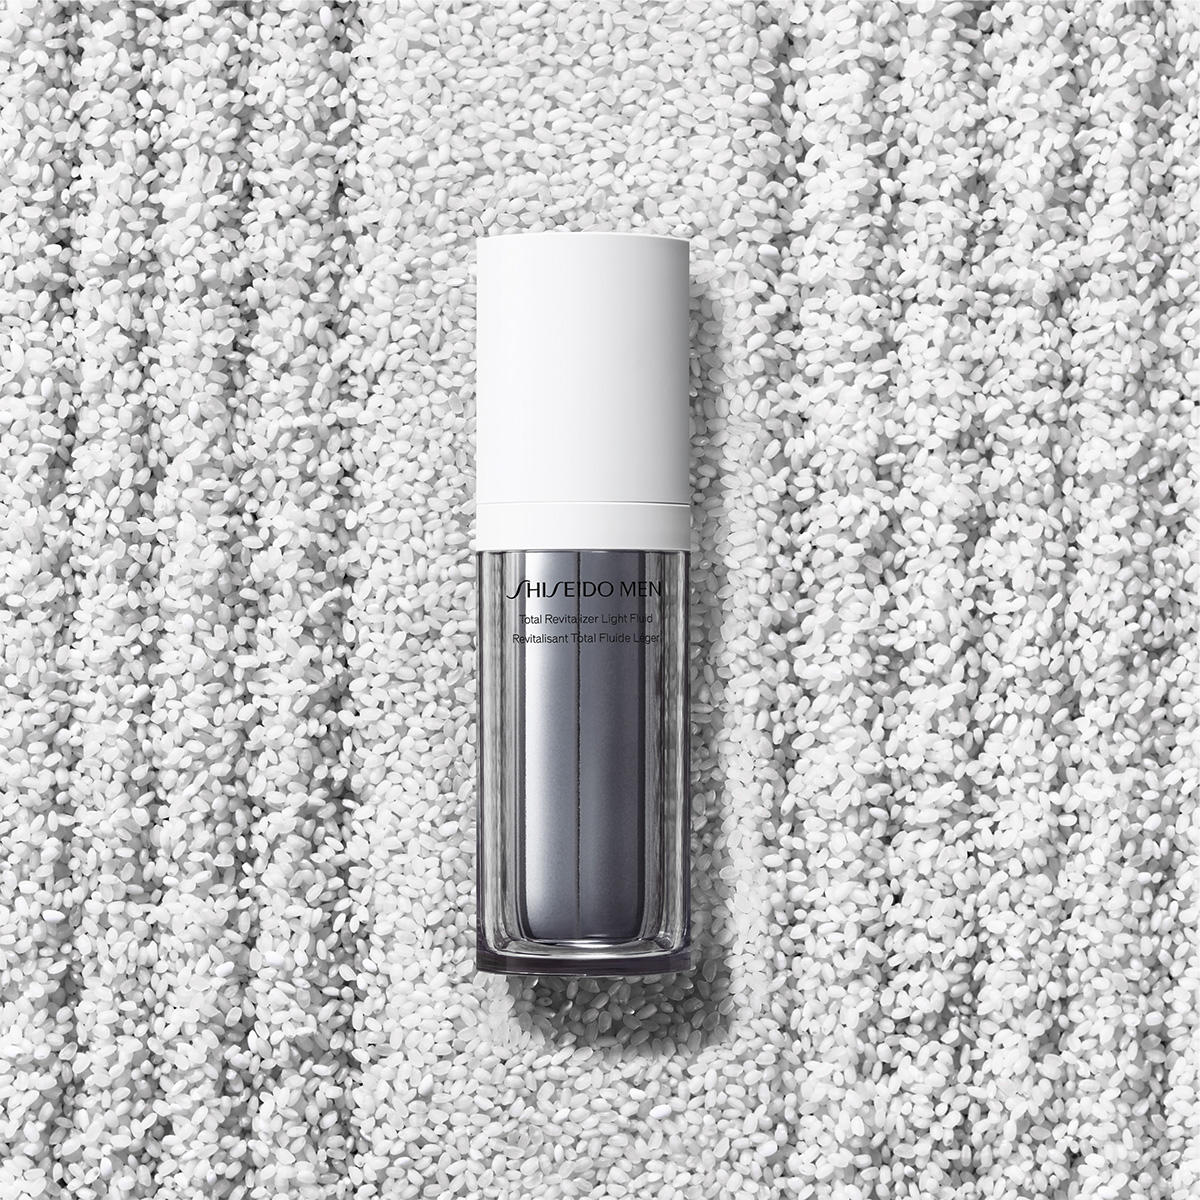 Shiseido Men Total Revitalizer Light Fluid 70 ml - 4